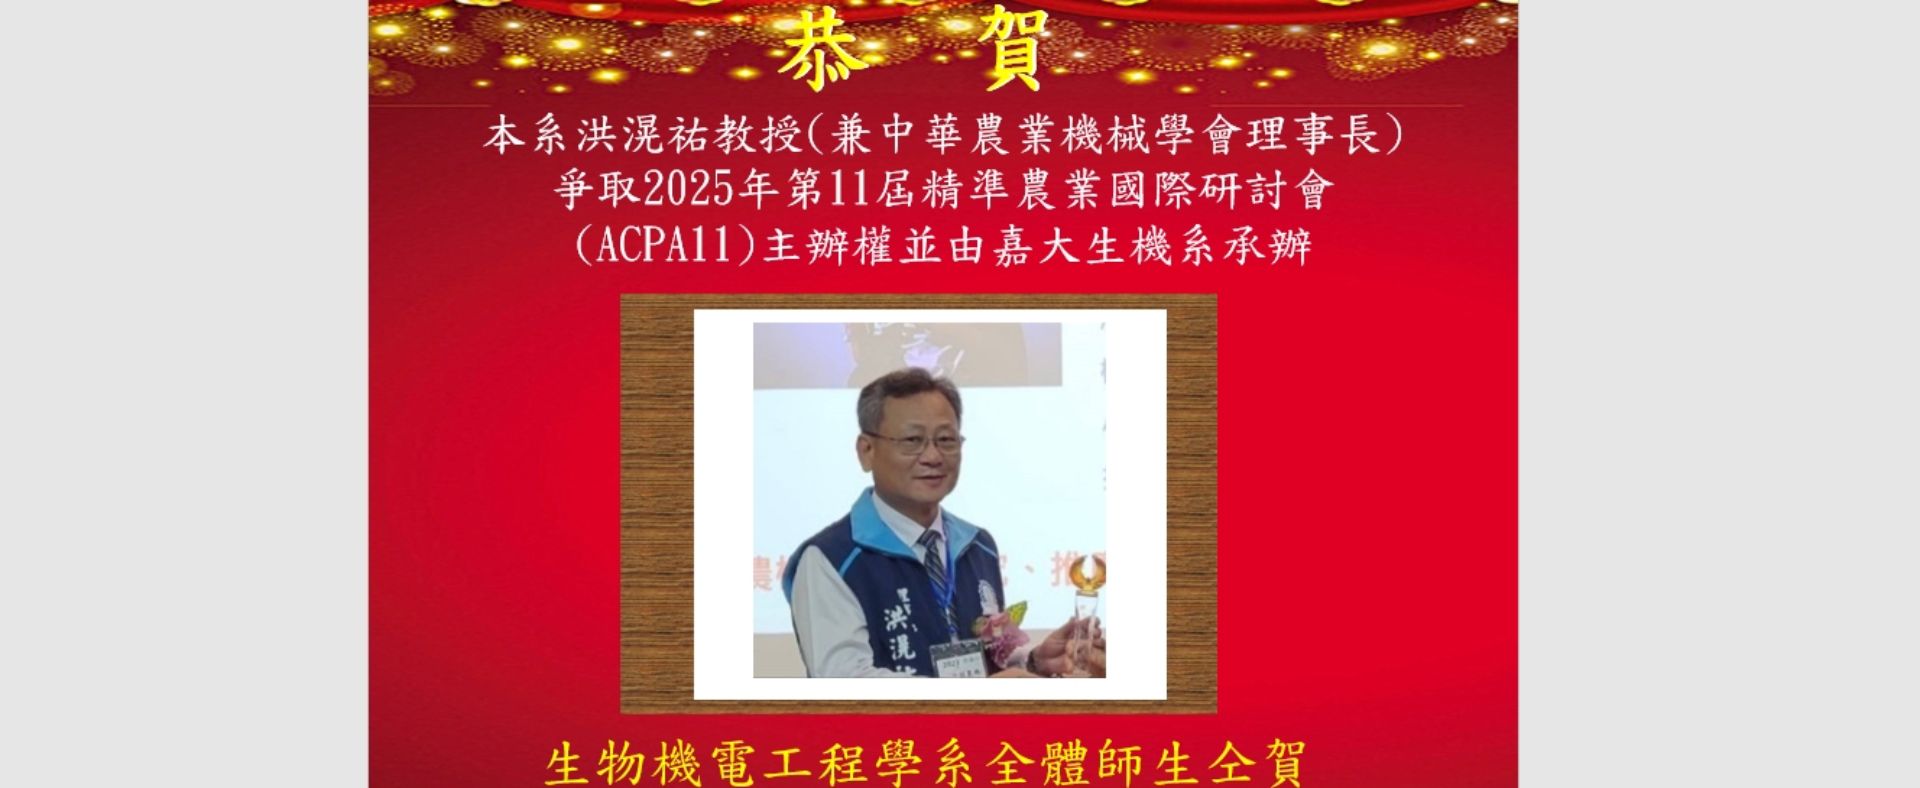 賀!本系洪滉祐教授爭取到2025年第11屆 精準農業國際研討會(ACPA11) 主辦權